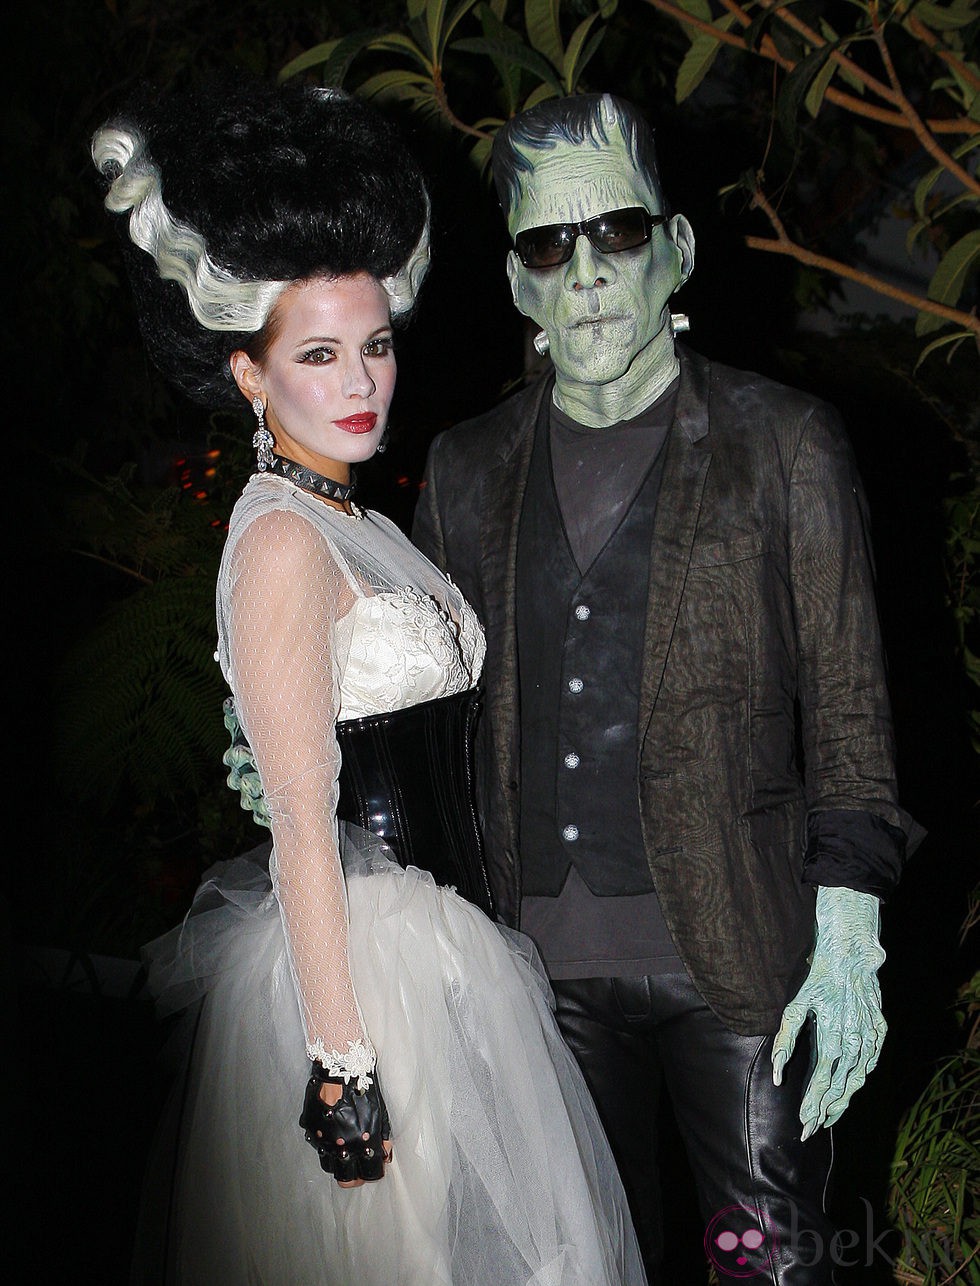 Maquillaje de la novia de Frankenstein para Halloween 2011